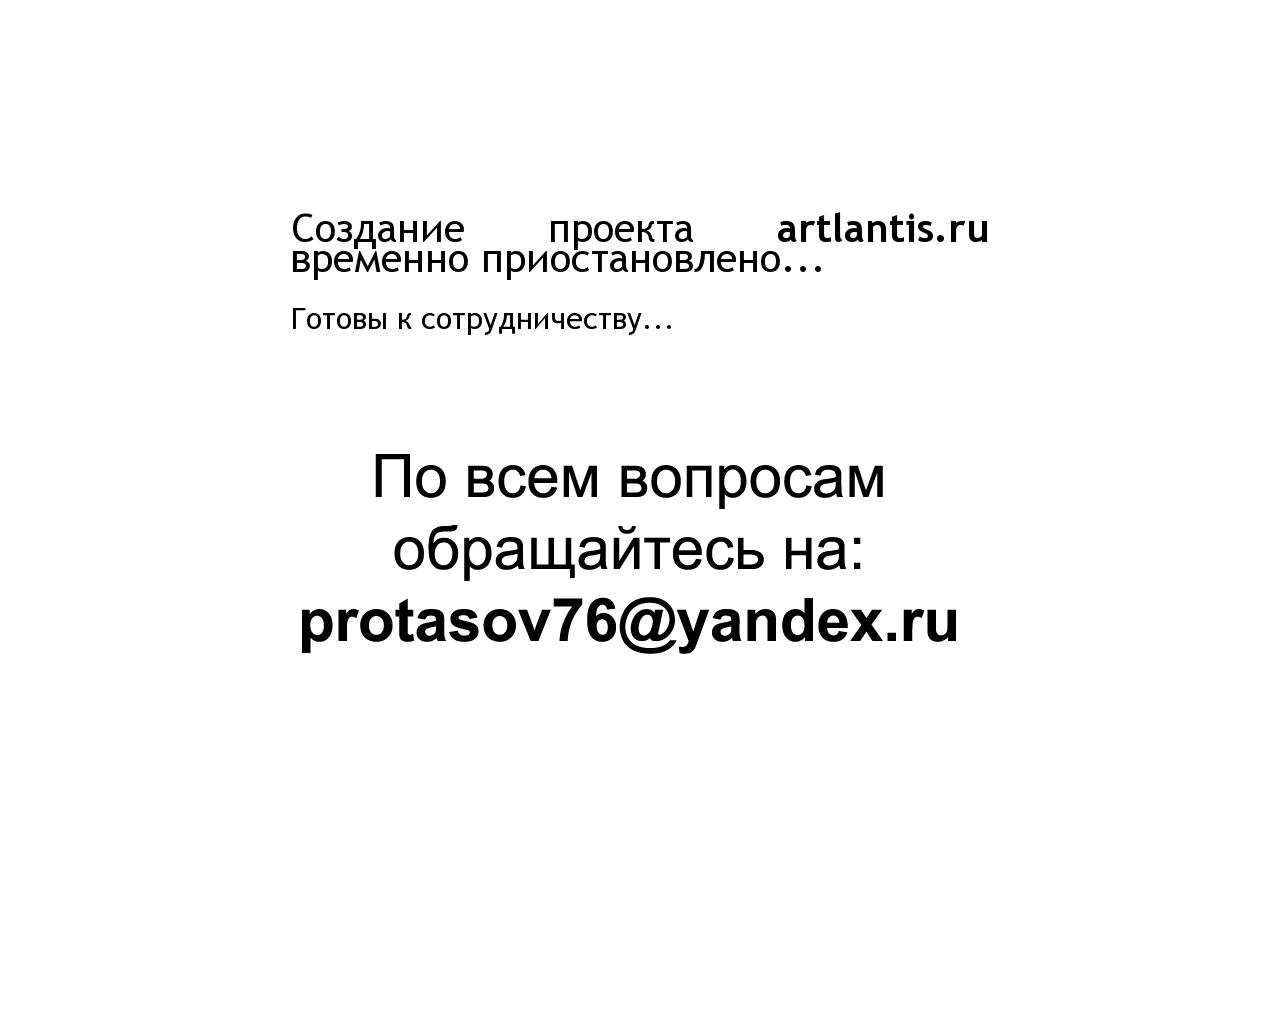 Изображение сайта artlantis.ru в разрешении 1280x1024